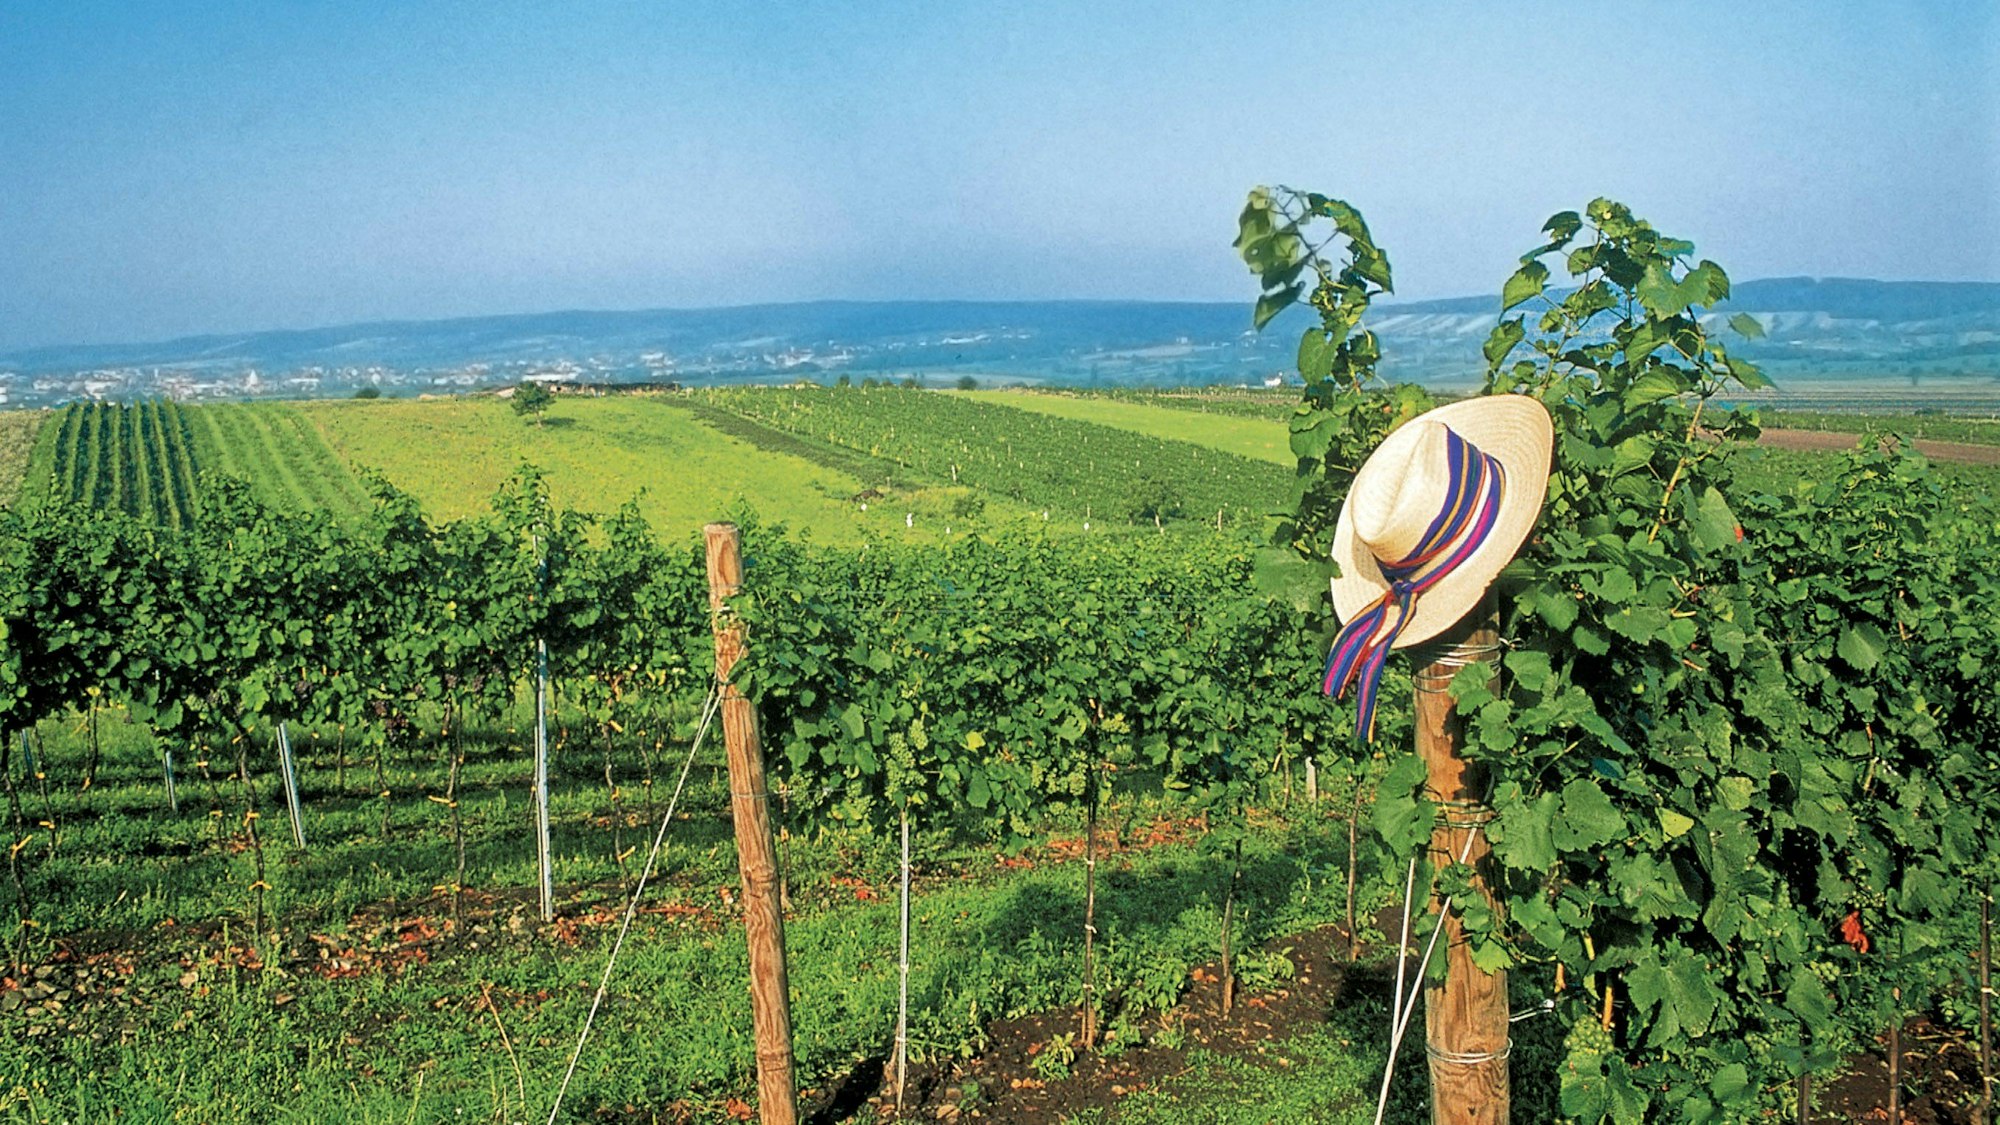 Weinreben bestimmen in weiten Teilen die Landschaft des Burgenlandes.